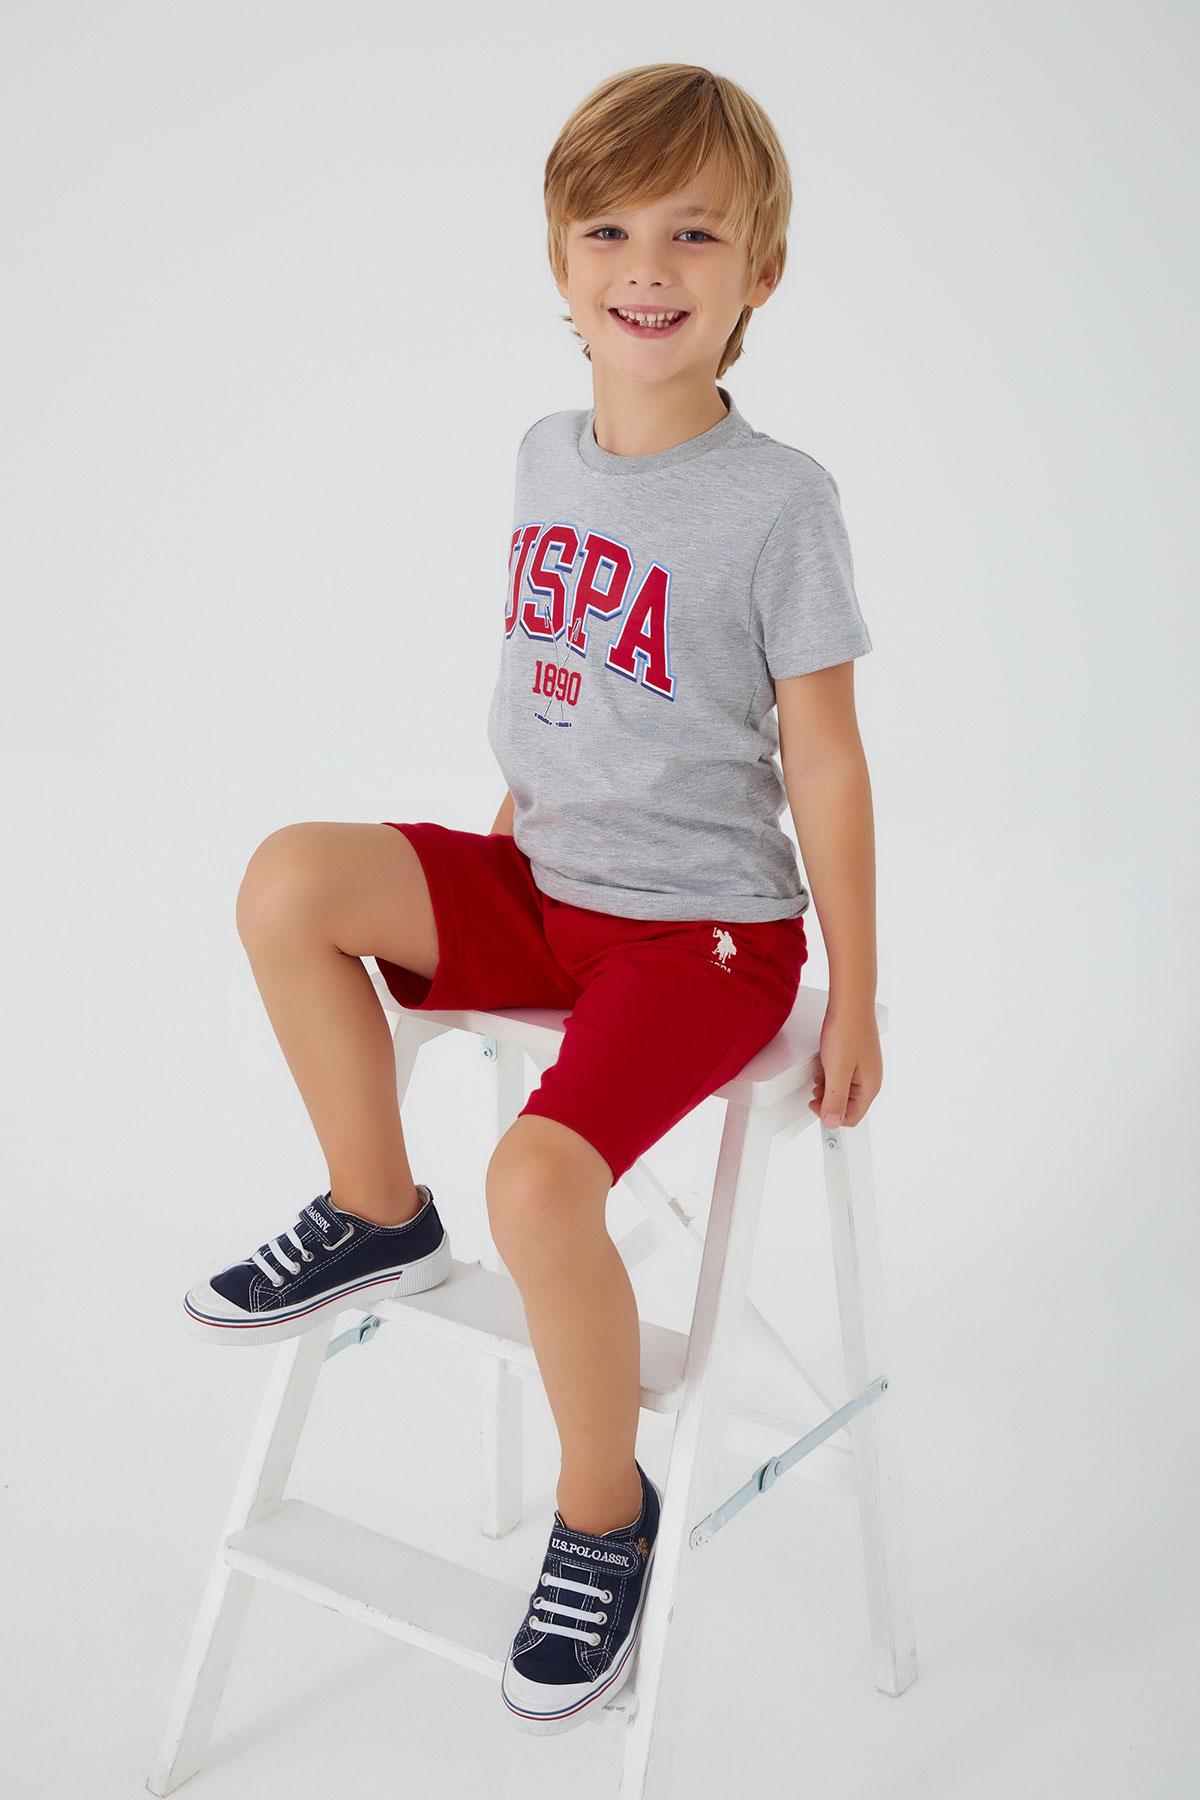 U.S. POLO ASSN. Komplet šorc i majica za dečake US1351-4 crveno-sivi